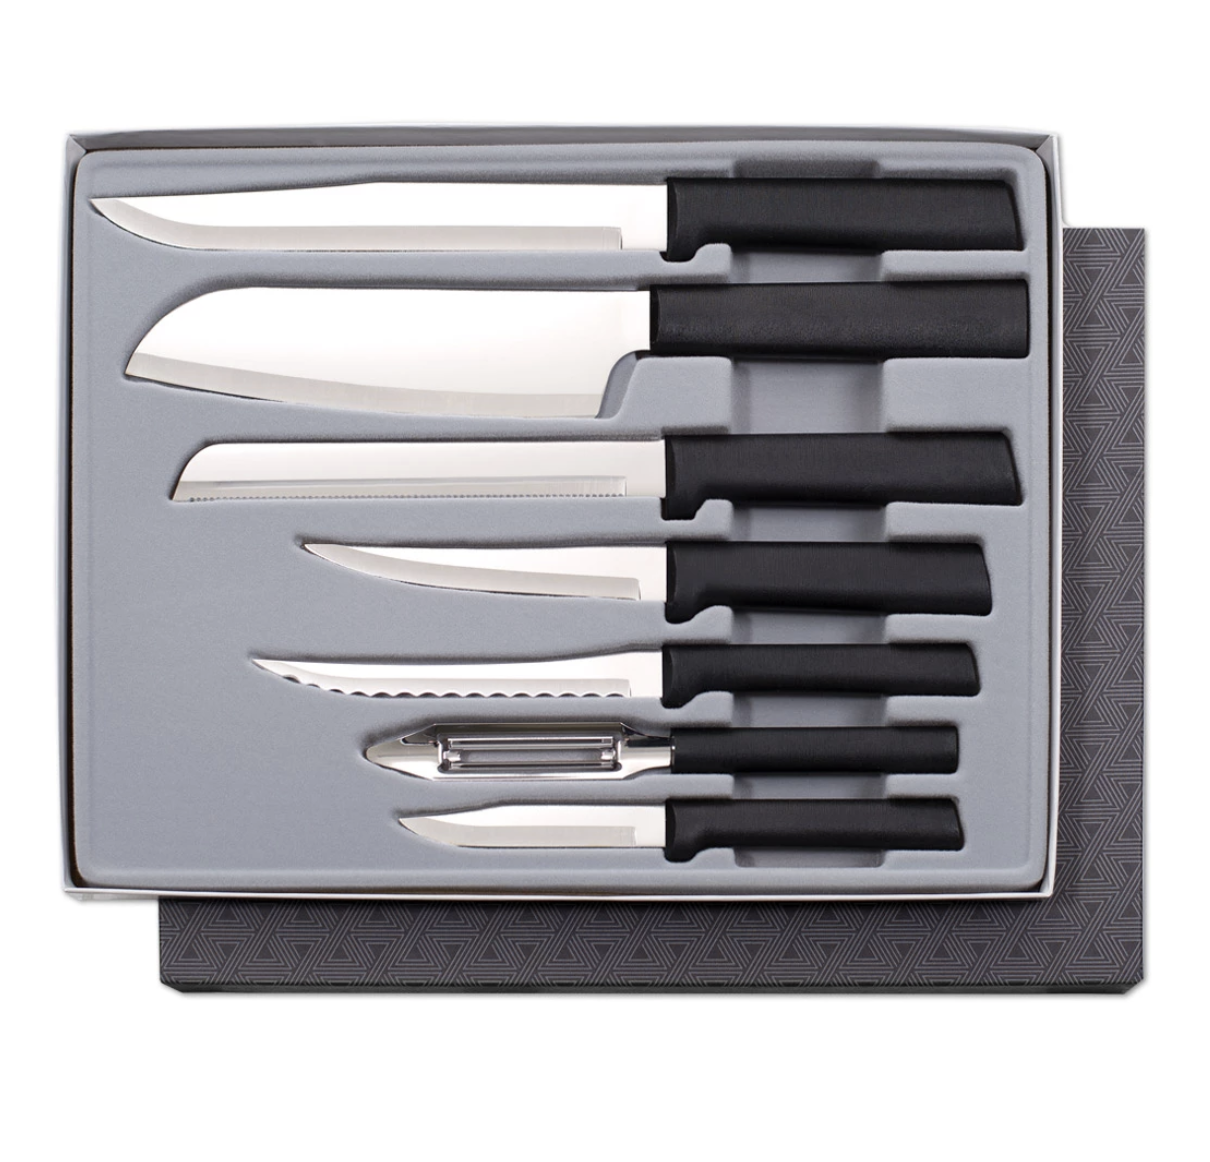 Купить нож 7 ножей. Cutlery Stainless Steel кухонный нож. Нож кухонный “Stainless Steel” 2386. Cutlery Stainless Steel кухонный нож твердас сталь. Stainless Steel ножей 6 шт Eco.